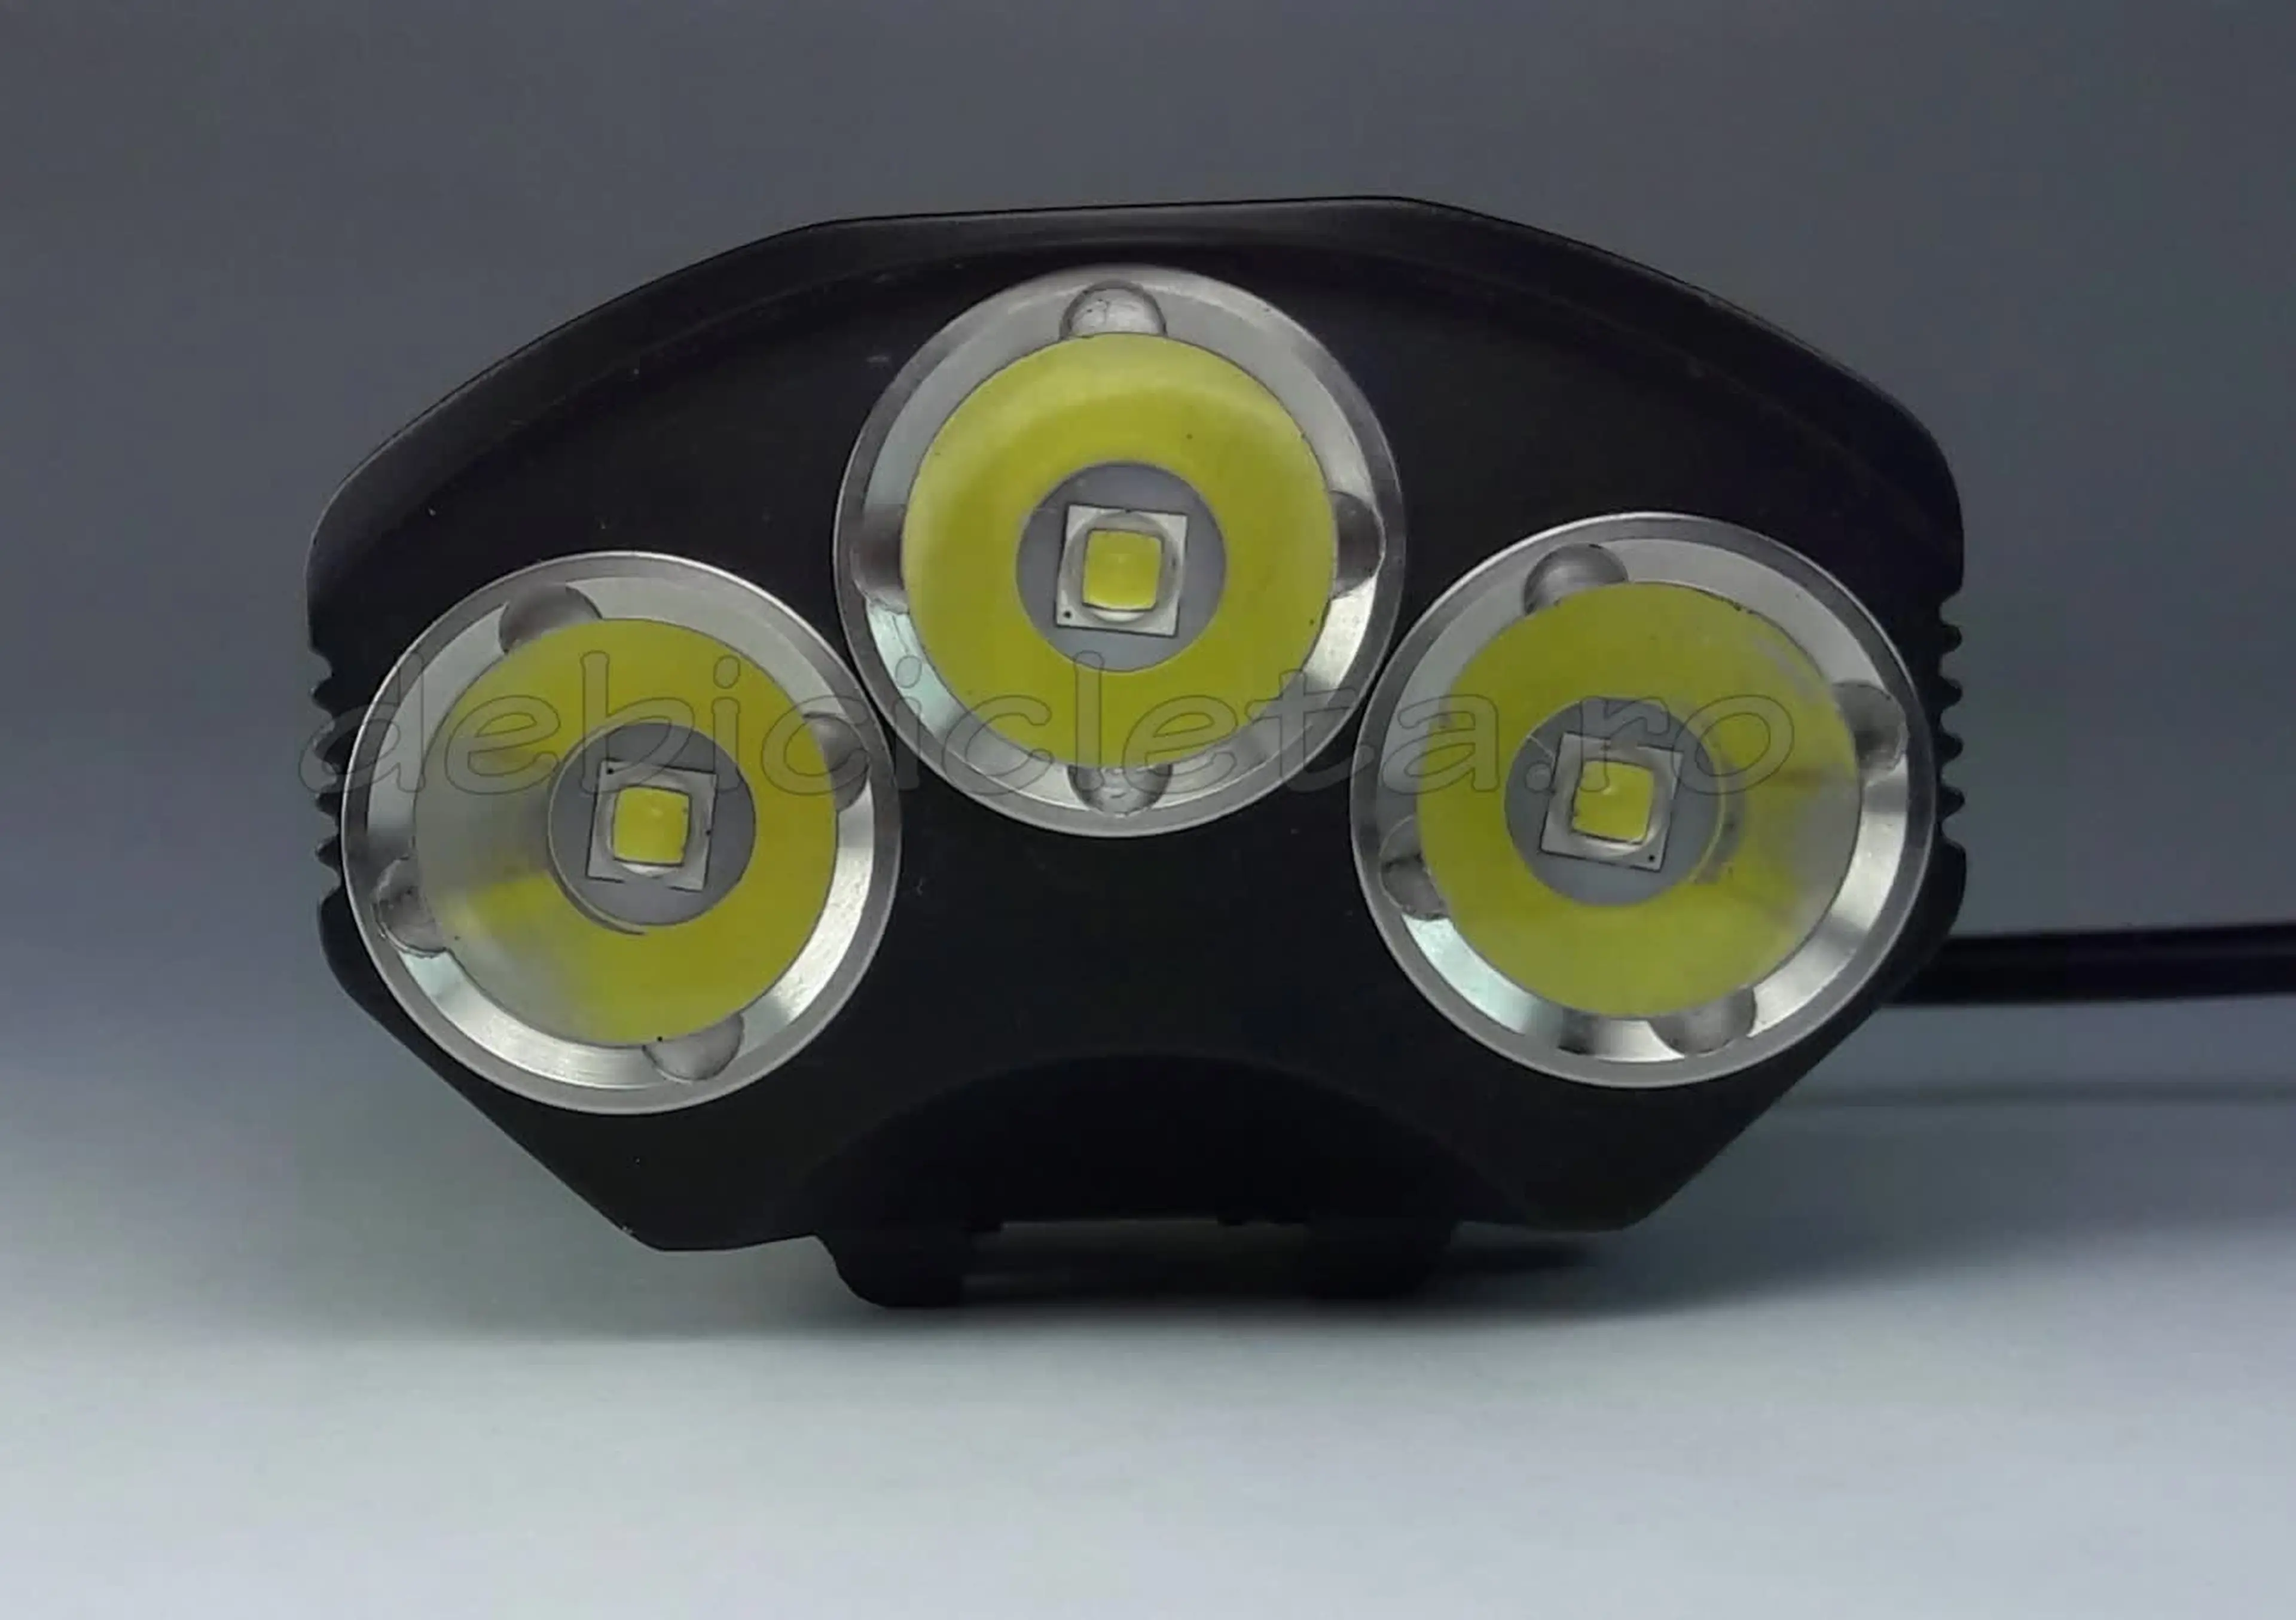 Image Far lanterna bicicleta CREE XM L 3T6 LED D009 buton comanda lux